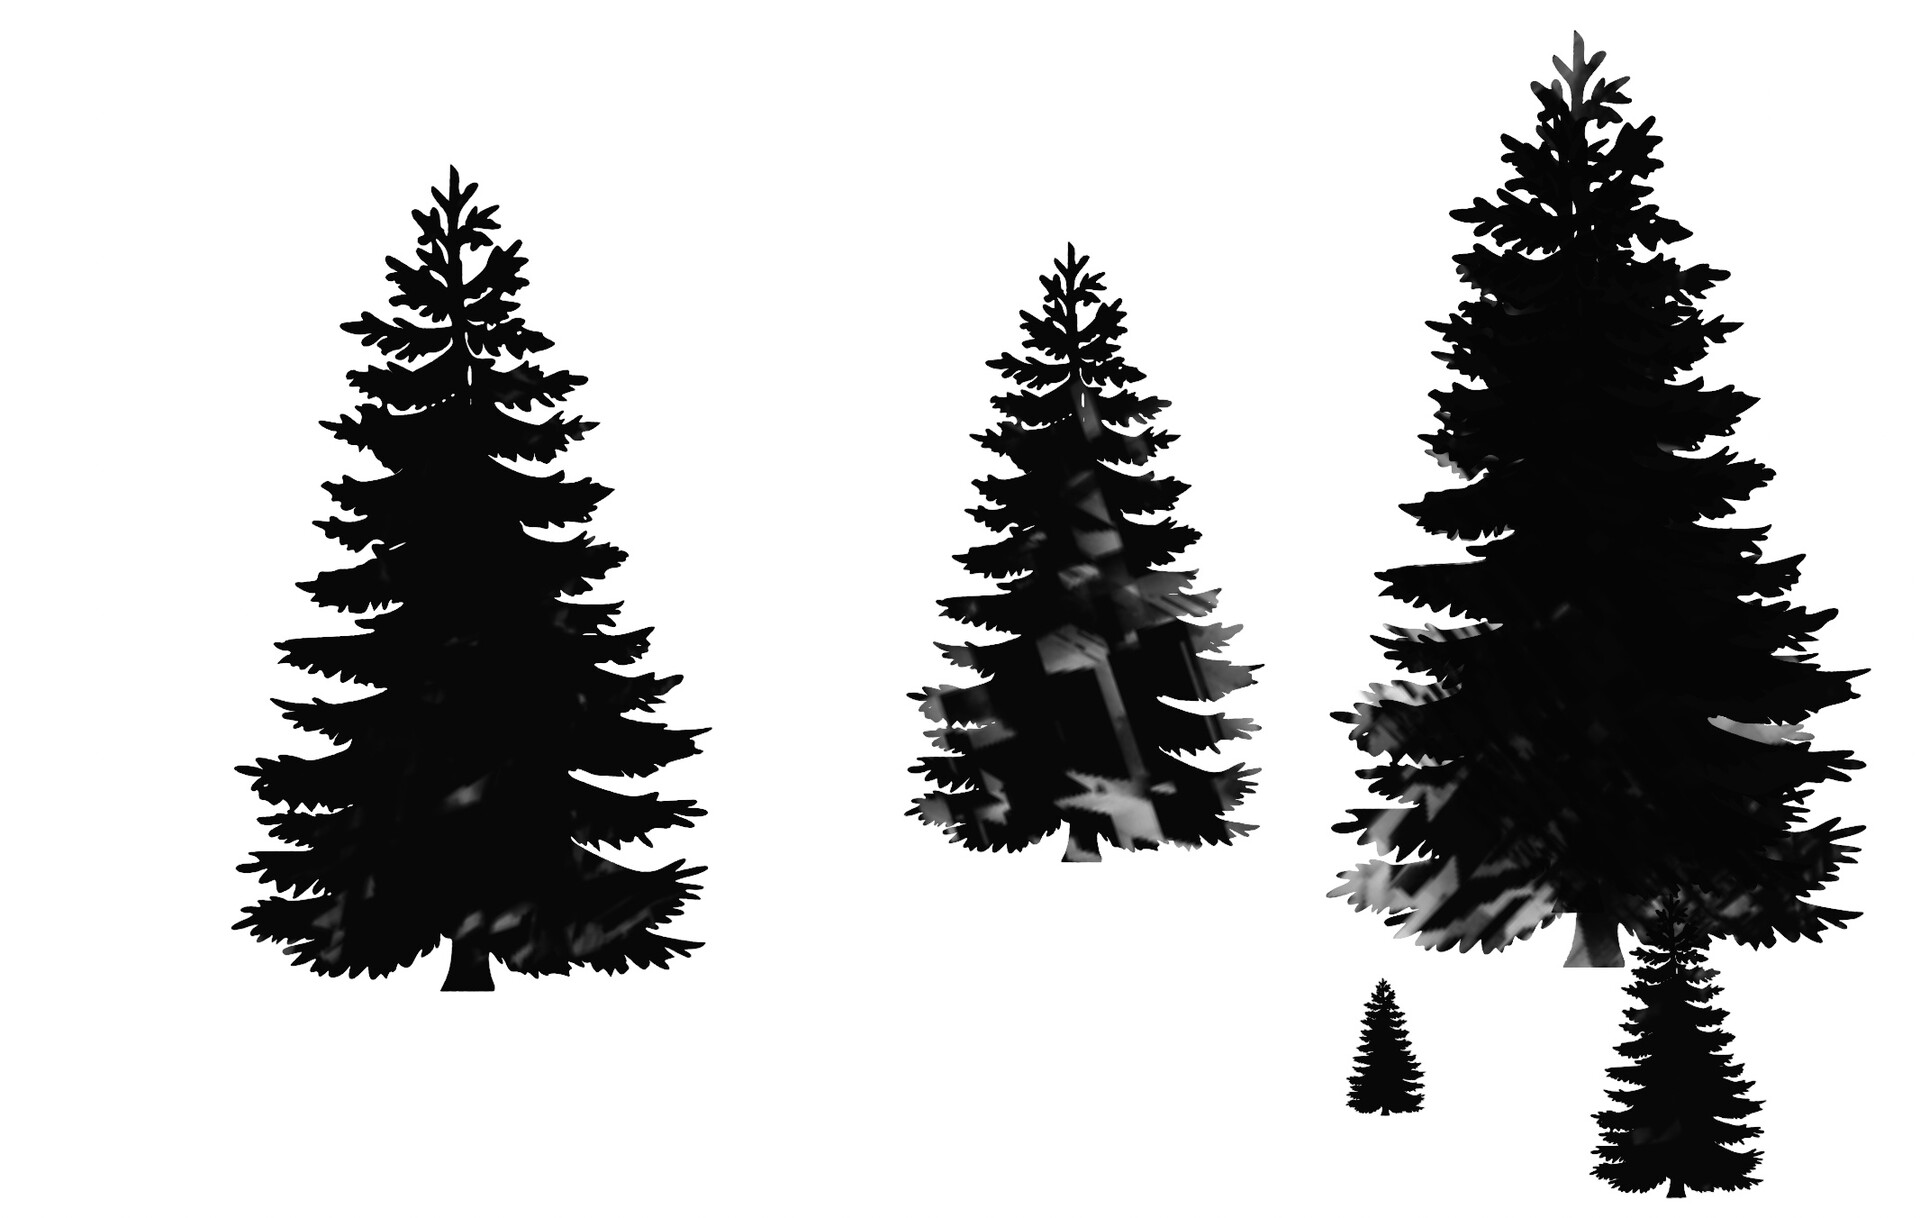 水墨风格的杉树、大树、松树等图形PS笔刷